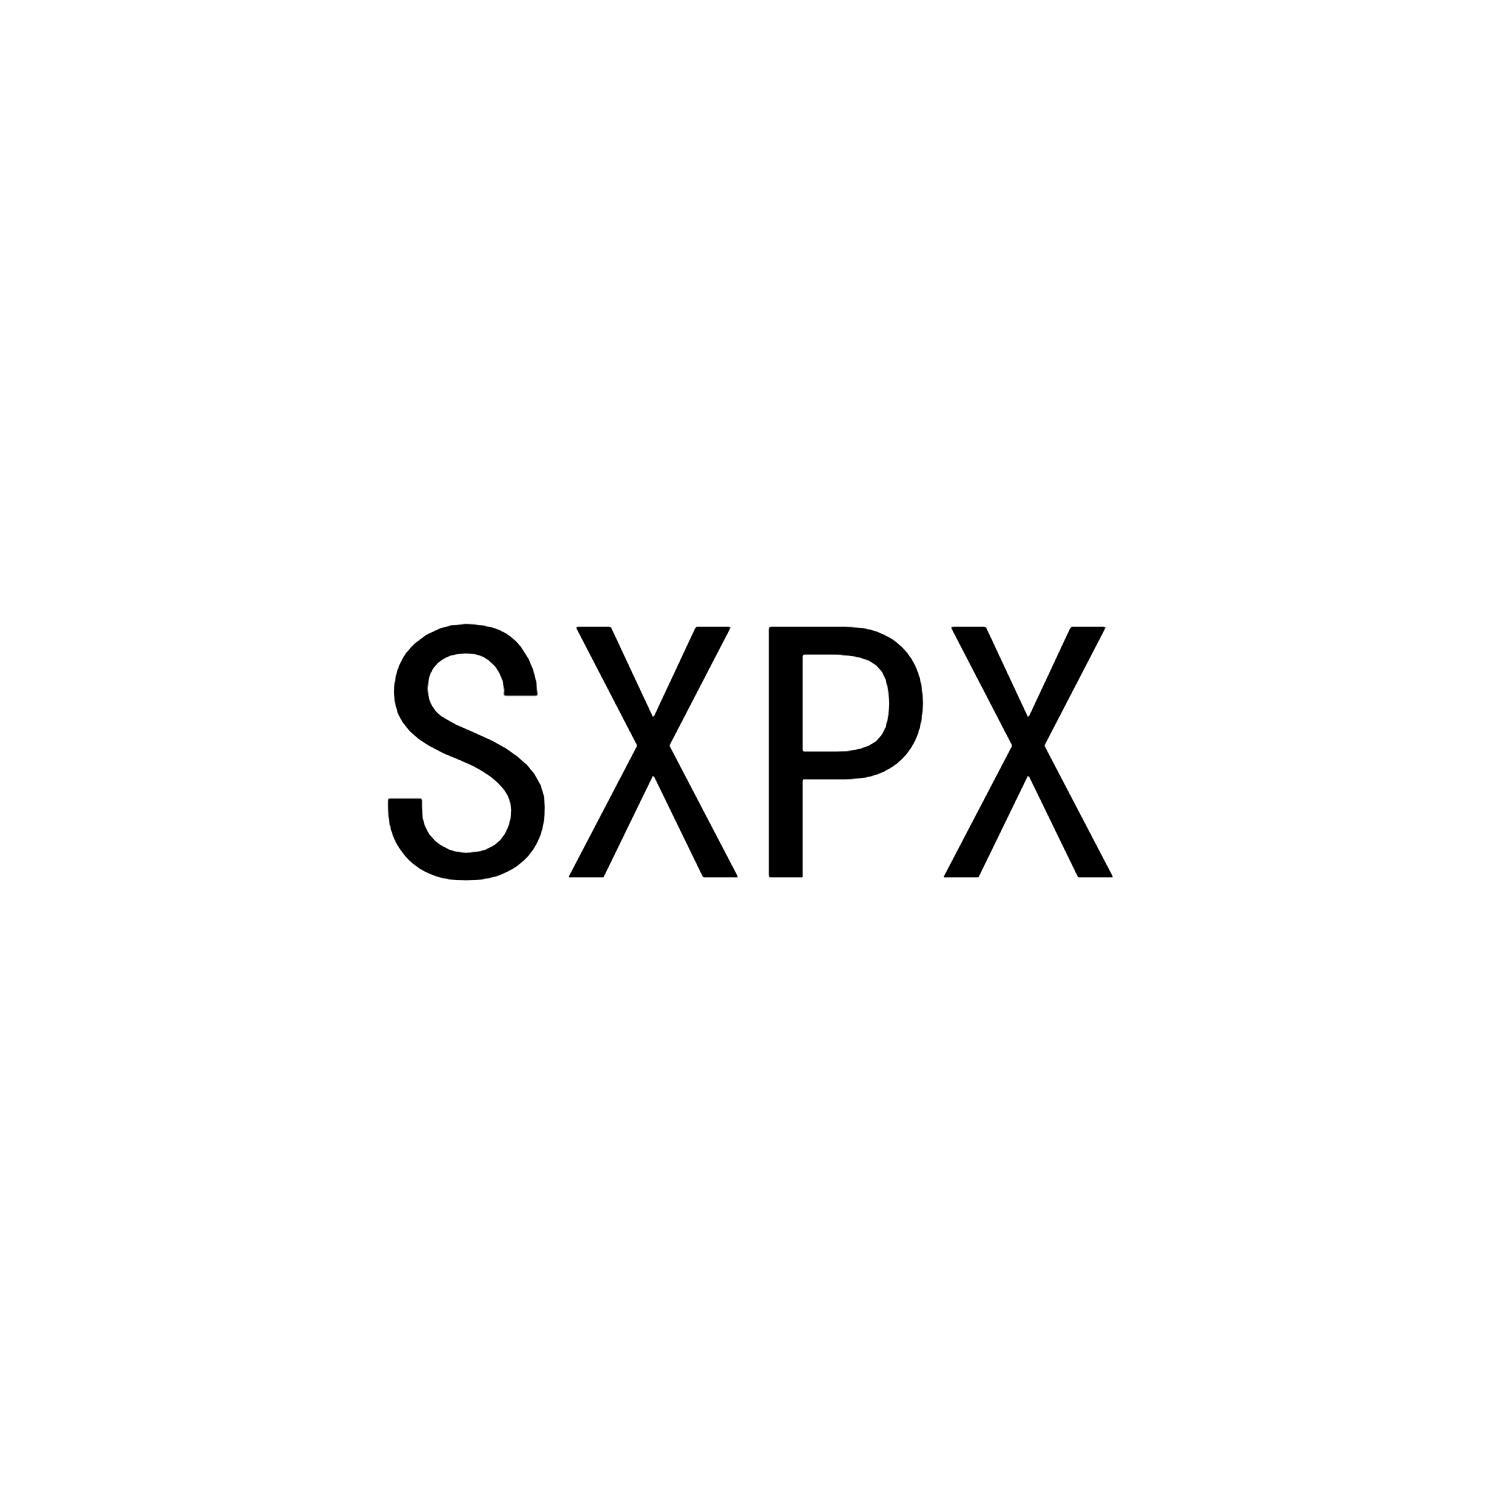 SXPX